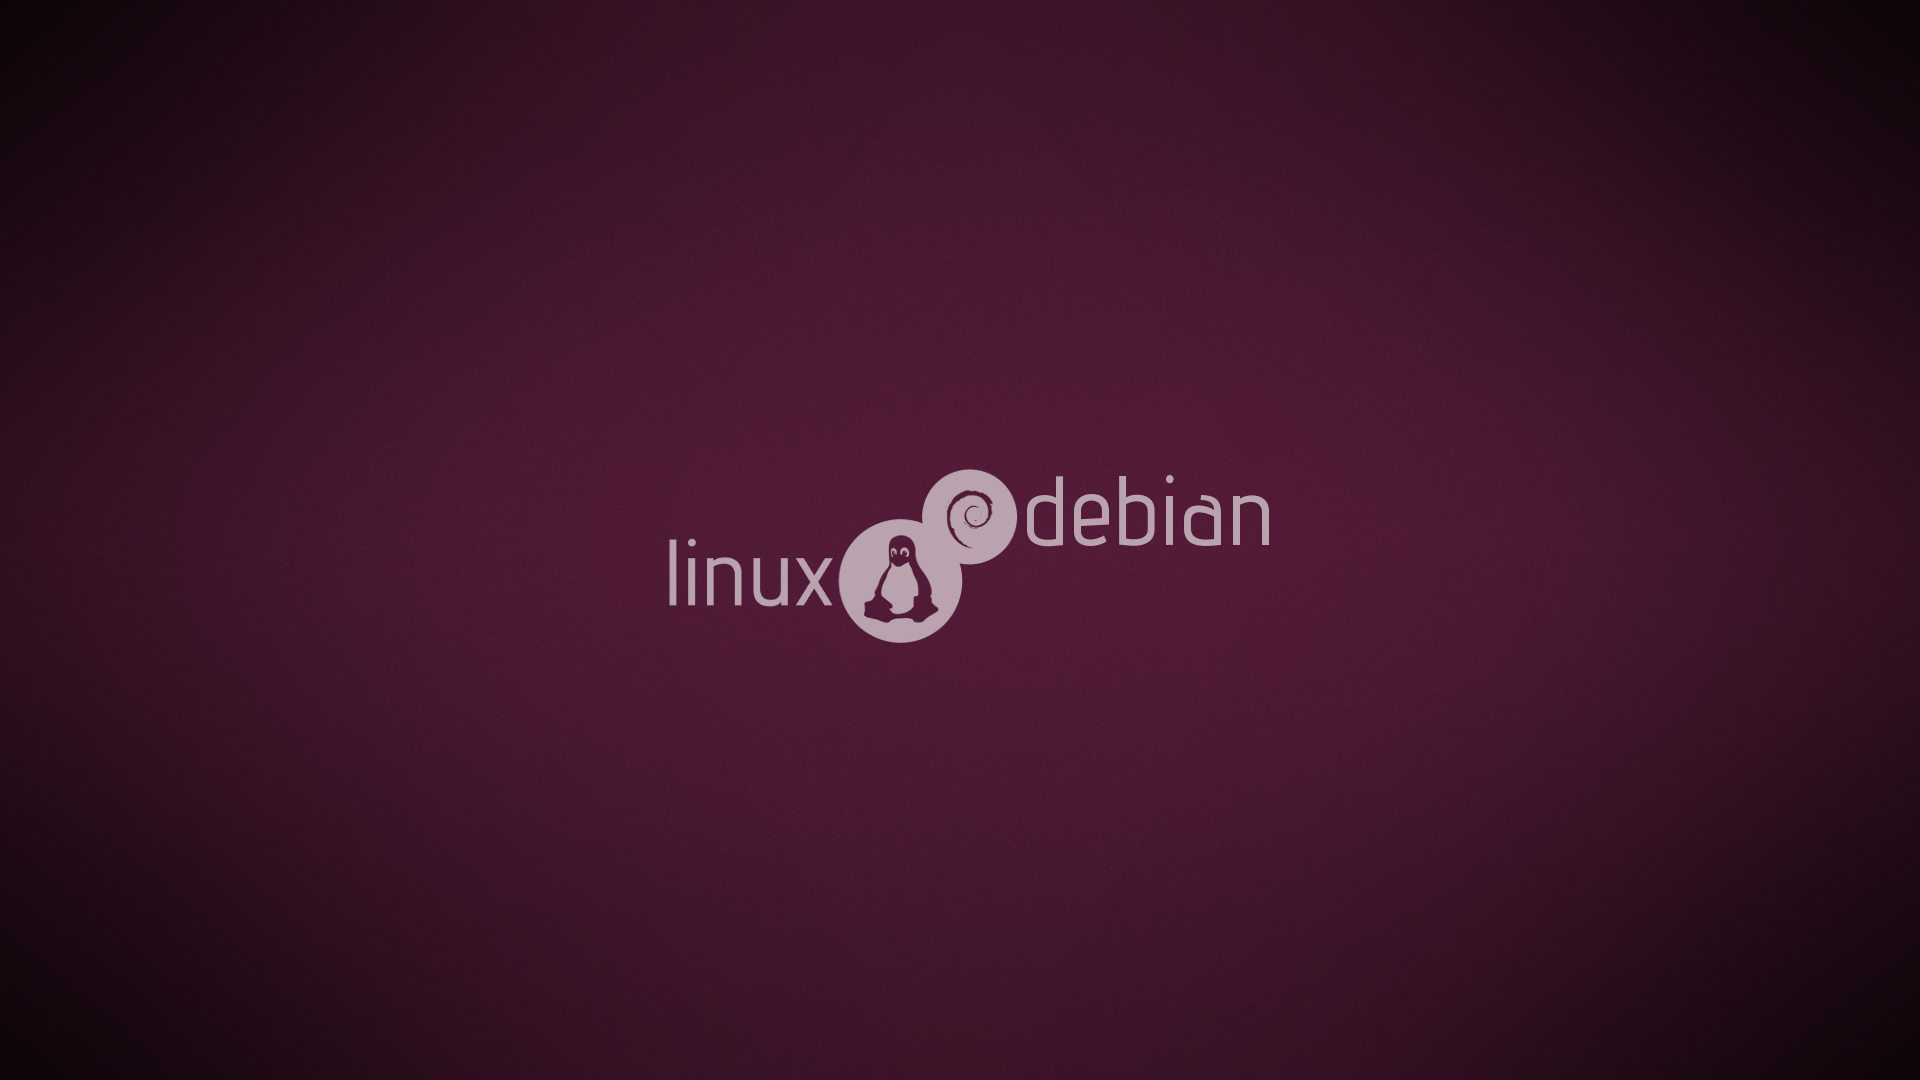 Debian Linux Wallpaper